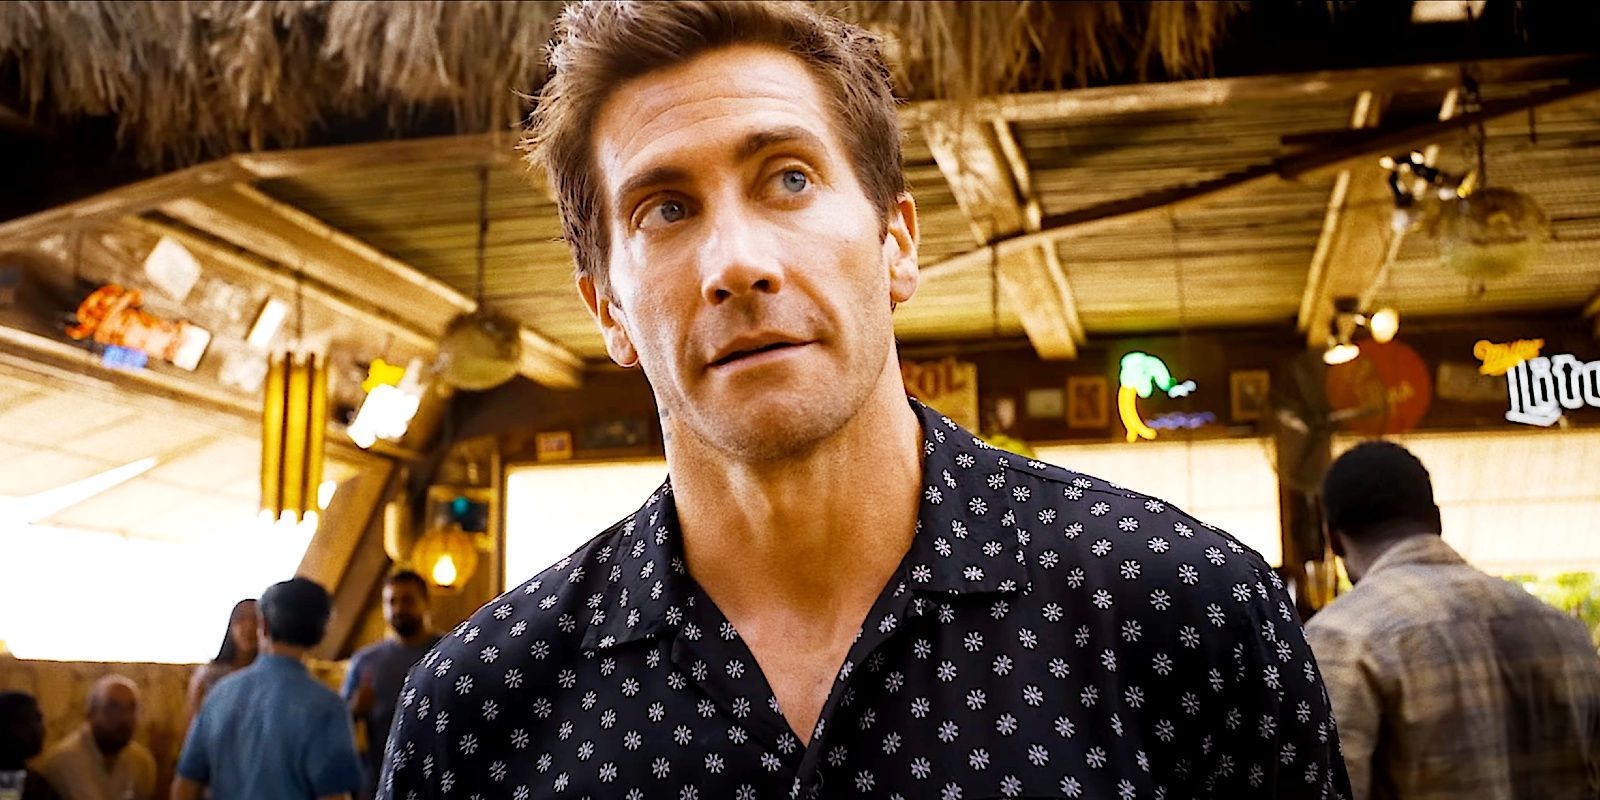 La controversia sobre la transmisión de Road House Remake: Jake Gyllenhaal finalmente responde al boicot del director